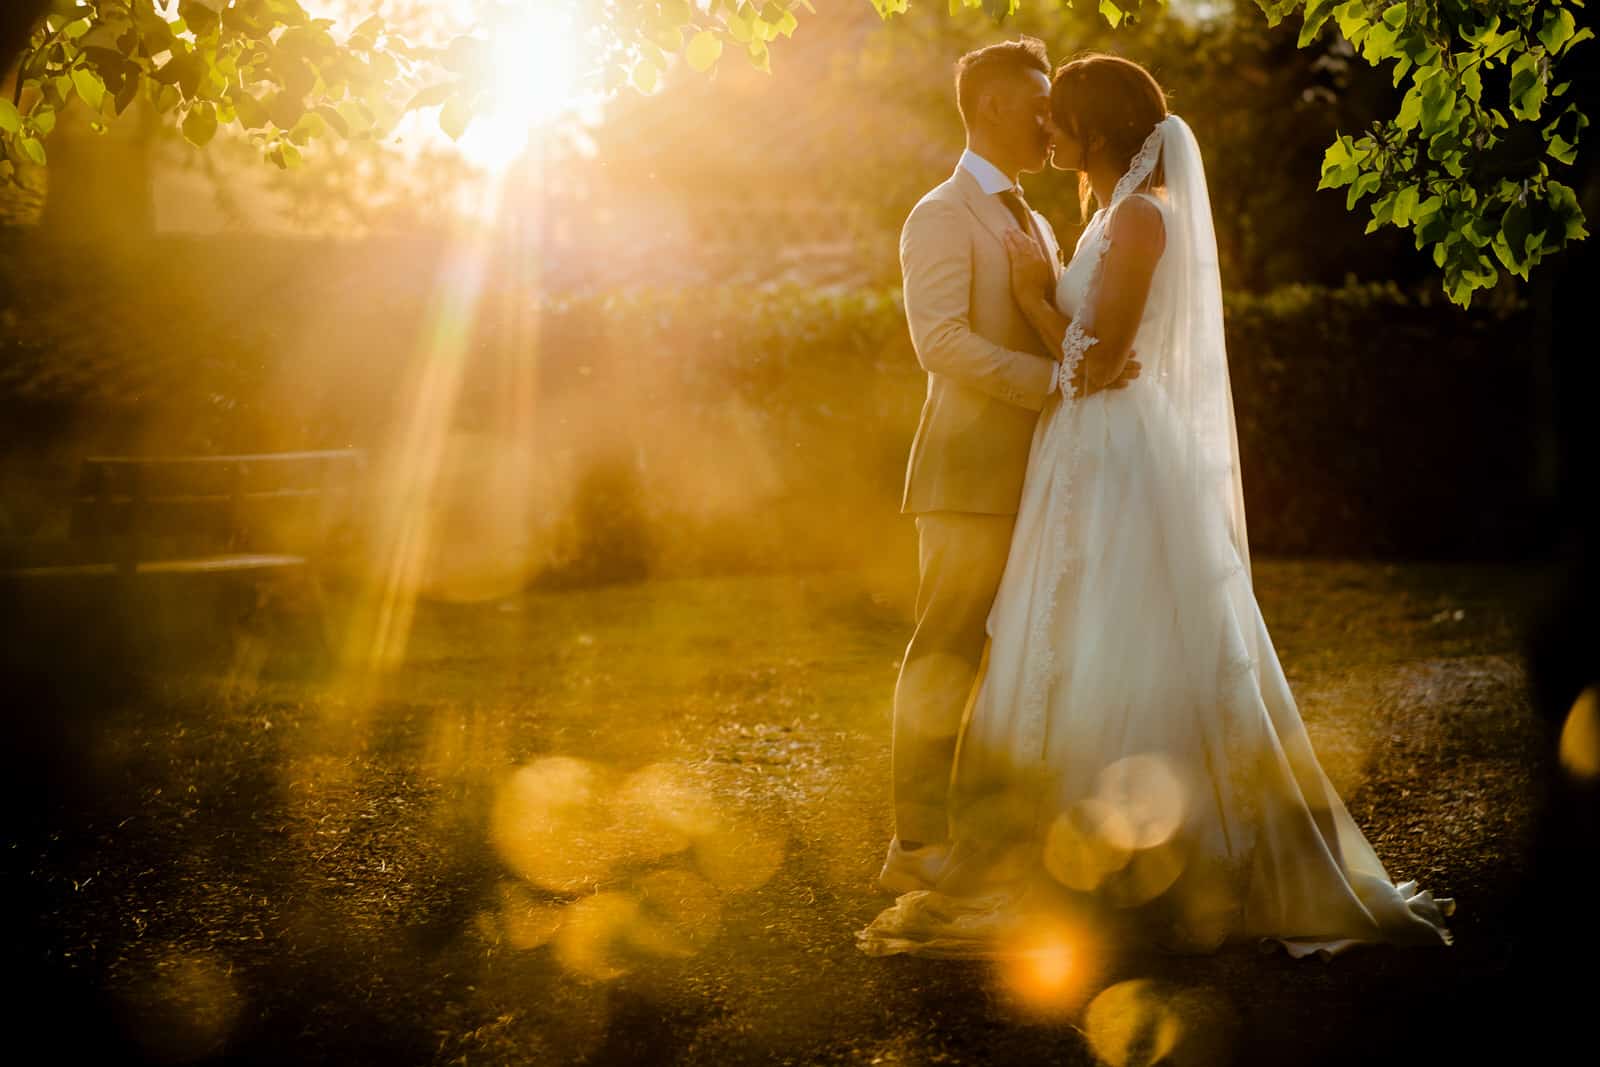 Wat kost een trouwfotograaf? Bekijk hier alle tareiven van jullie bruidsfotograaf. Bruidsfotografie voor de echte mooie momenten!